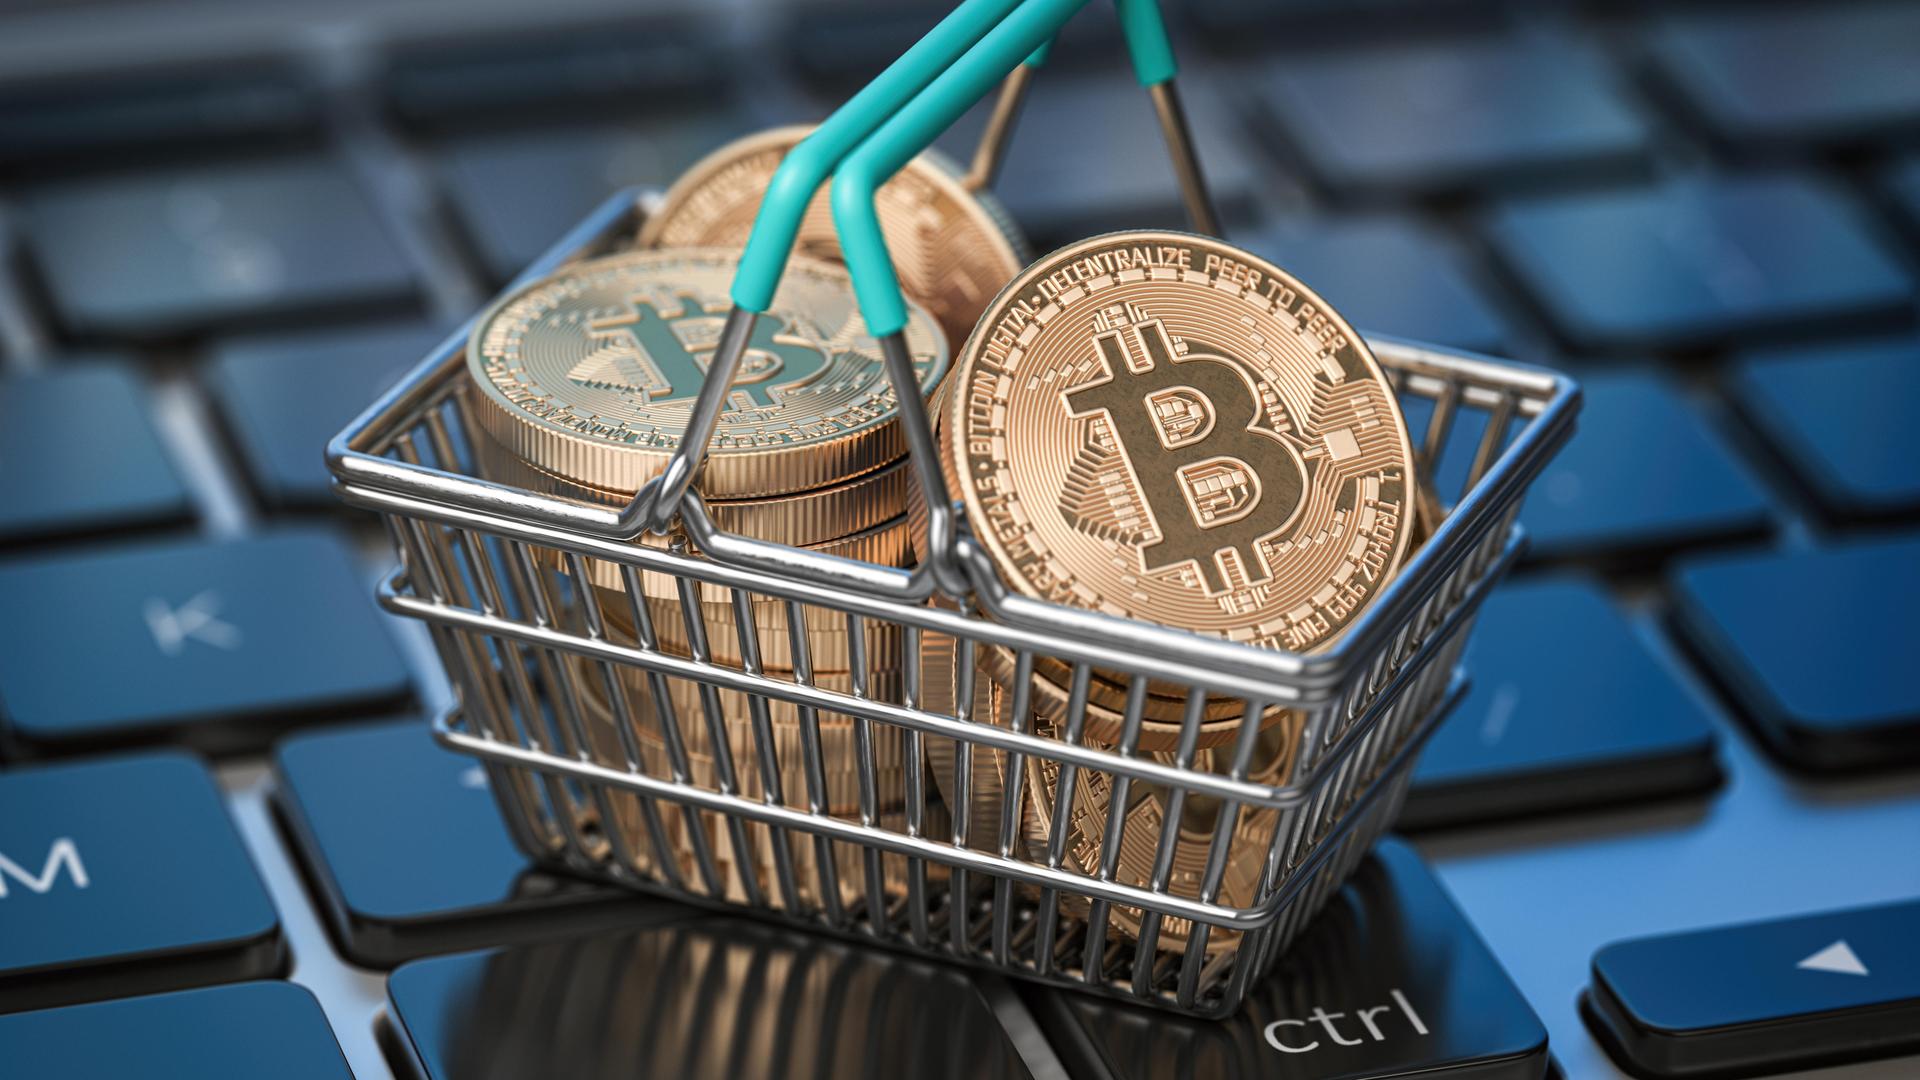 Bitcoin-Münzen liegen in einem Mini-Einkaufskorb, der auf einer Computertastatur steht.